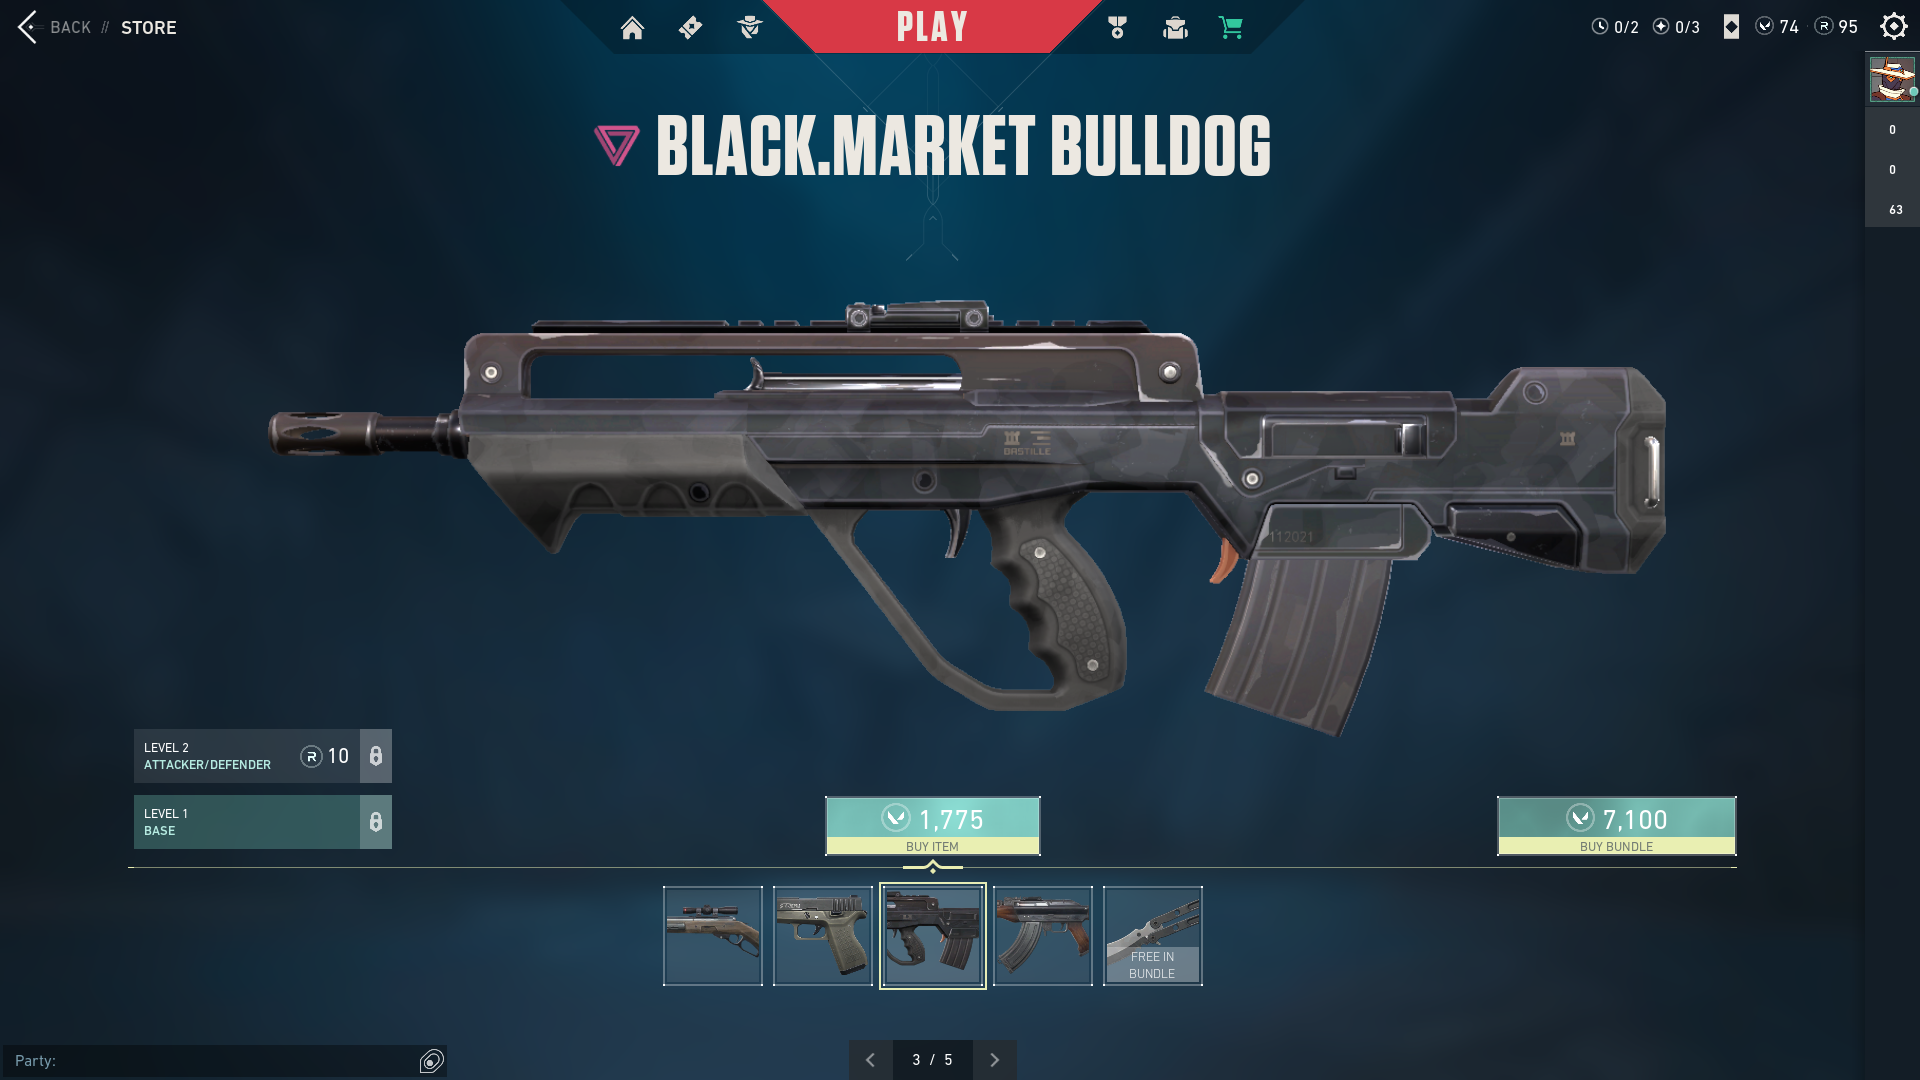 Black Market bulldog